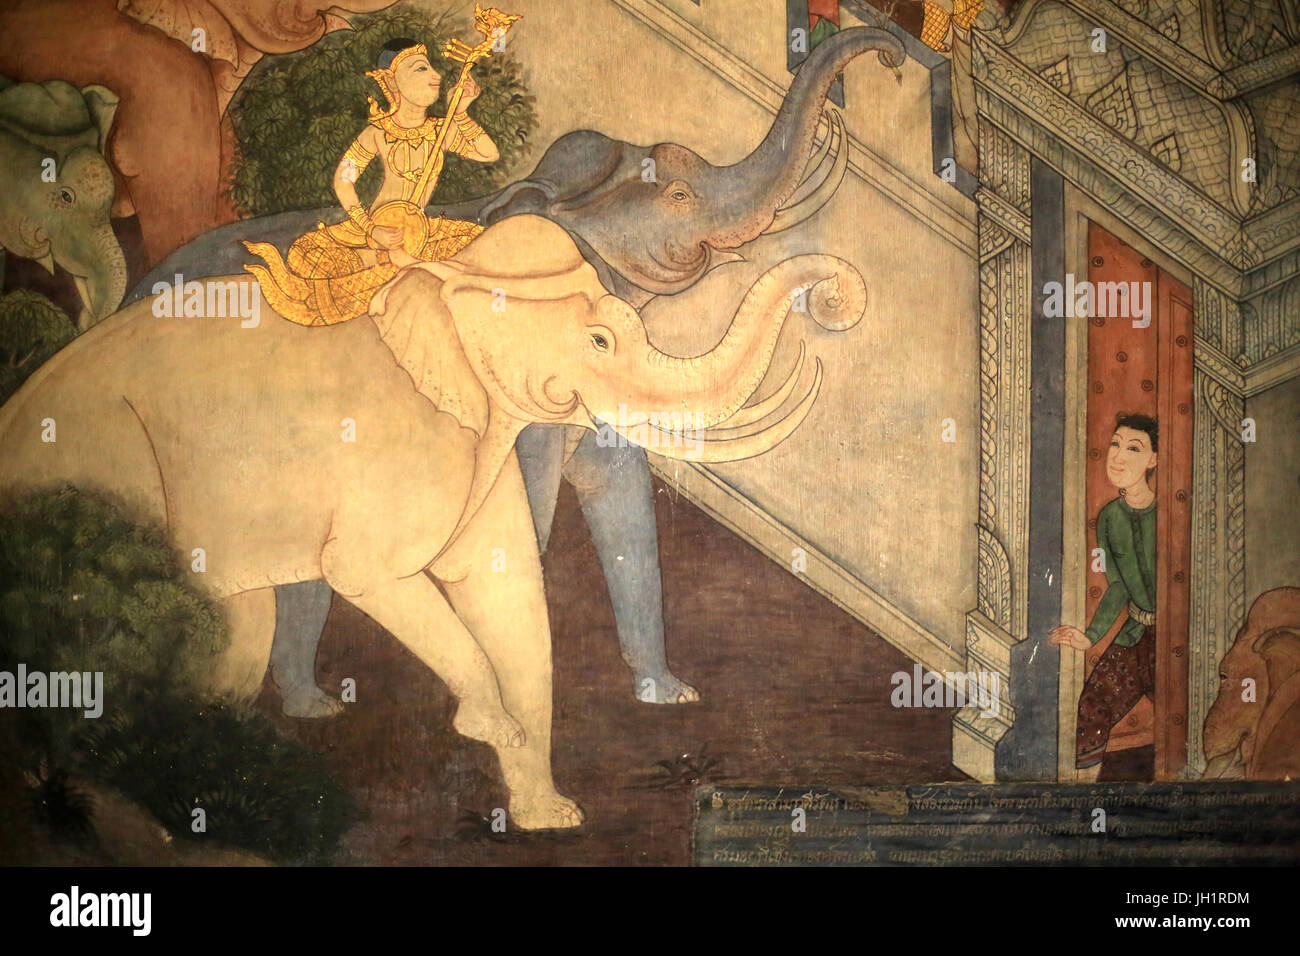 El príncipe Rama. Detalle Mural en las paredes internas de la Vihara desde la época del rey Rama III representando el Ramakian. Wat Pho, Wat Phra Chettuphon. 1788. Bang Foto de stock